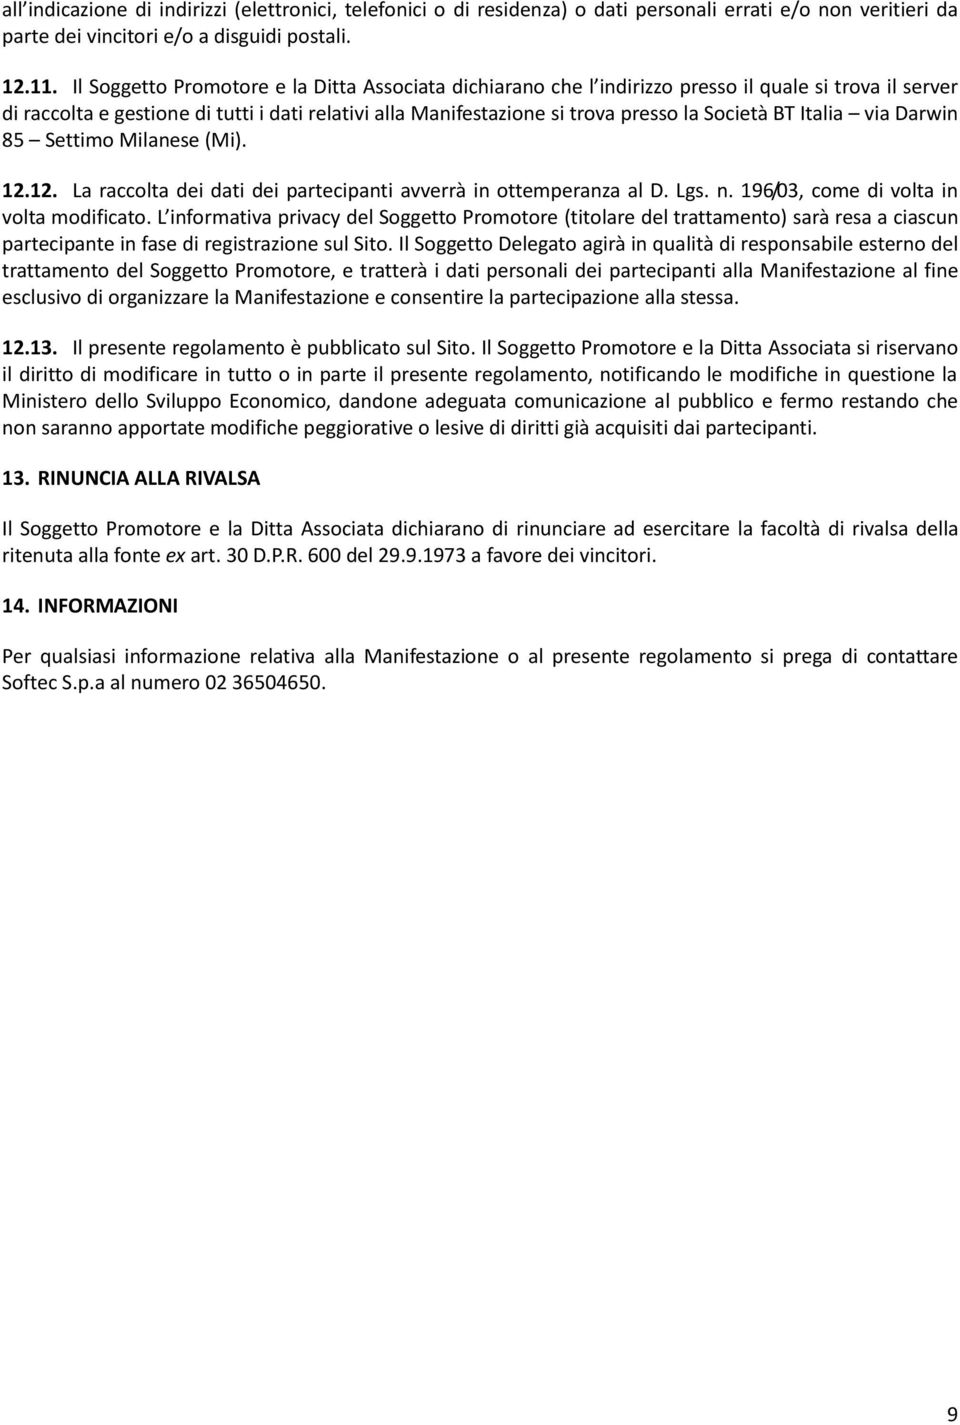 BT Italia via Darwin 85 Settimo Milanese (Mi). 12.12. La raccolta dei dati dei partecipanti avverrà in ottemperanza al D. Lgs. n. 196/03, come di volta in volta modificato.